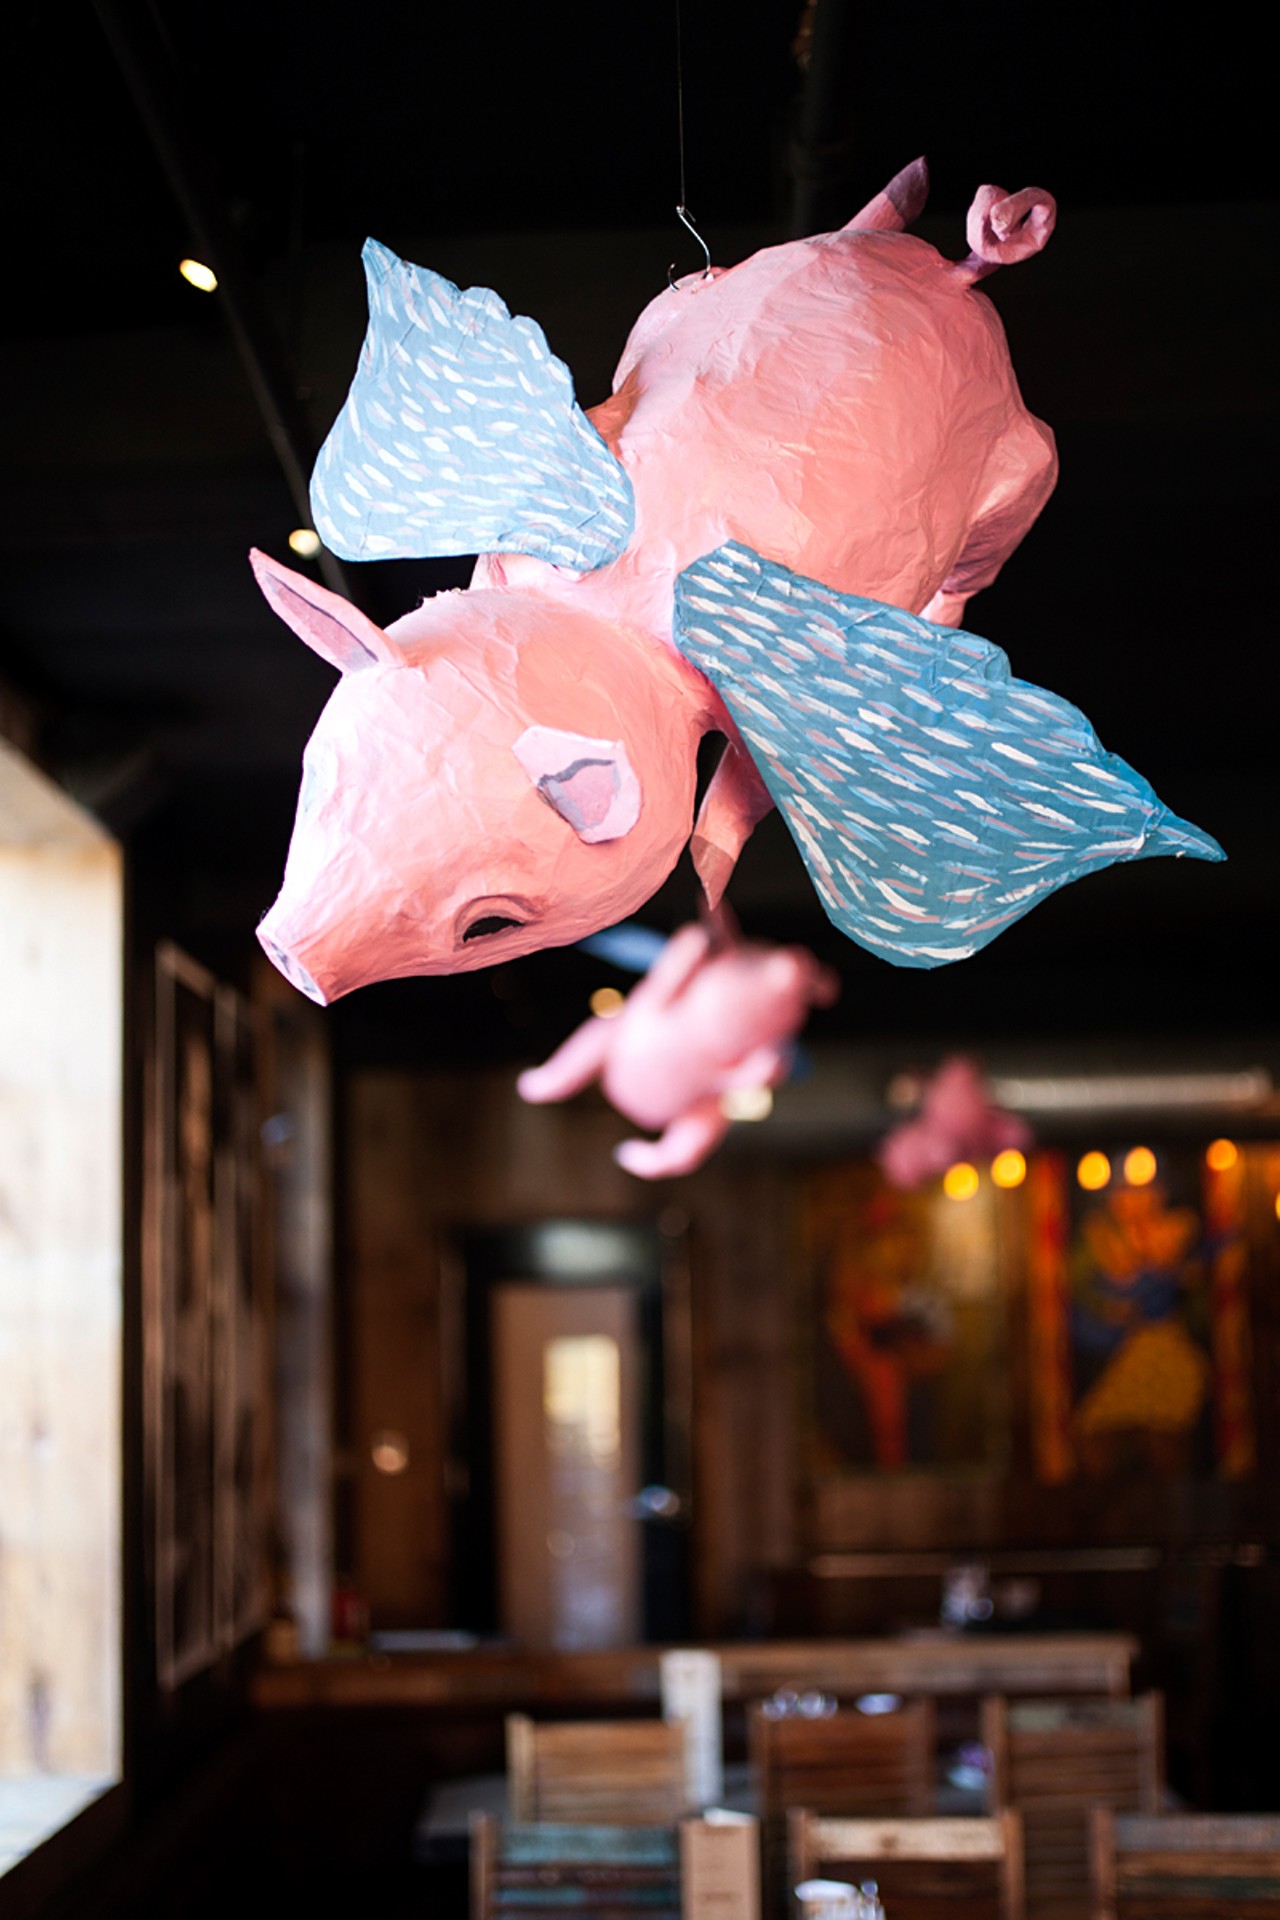 Flying pigs in Hendricks' main dining room.